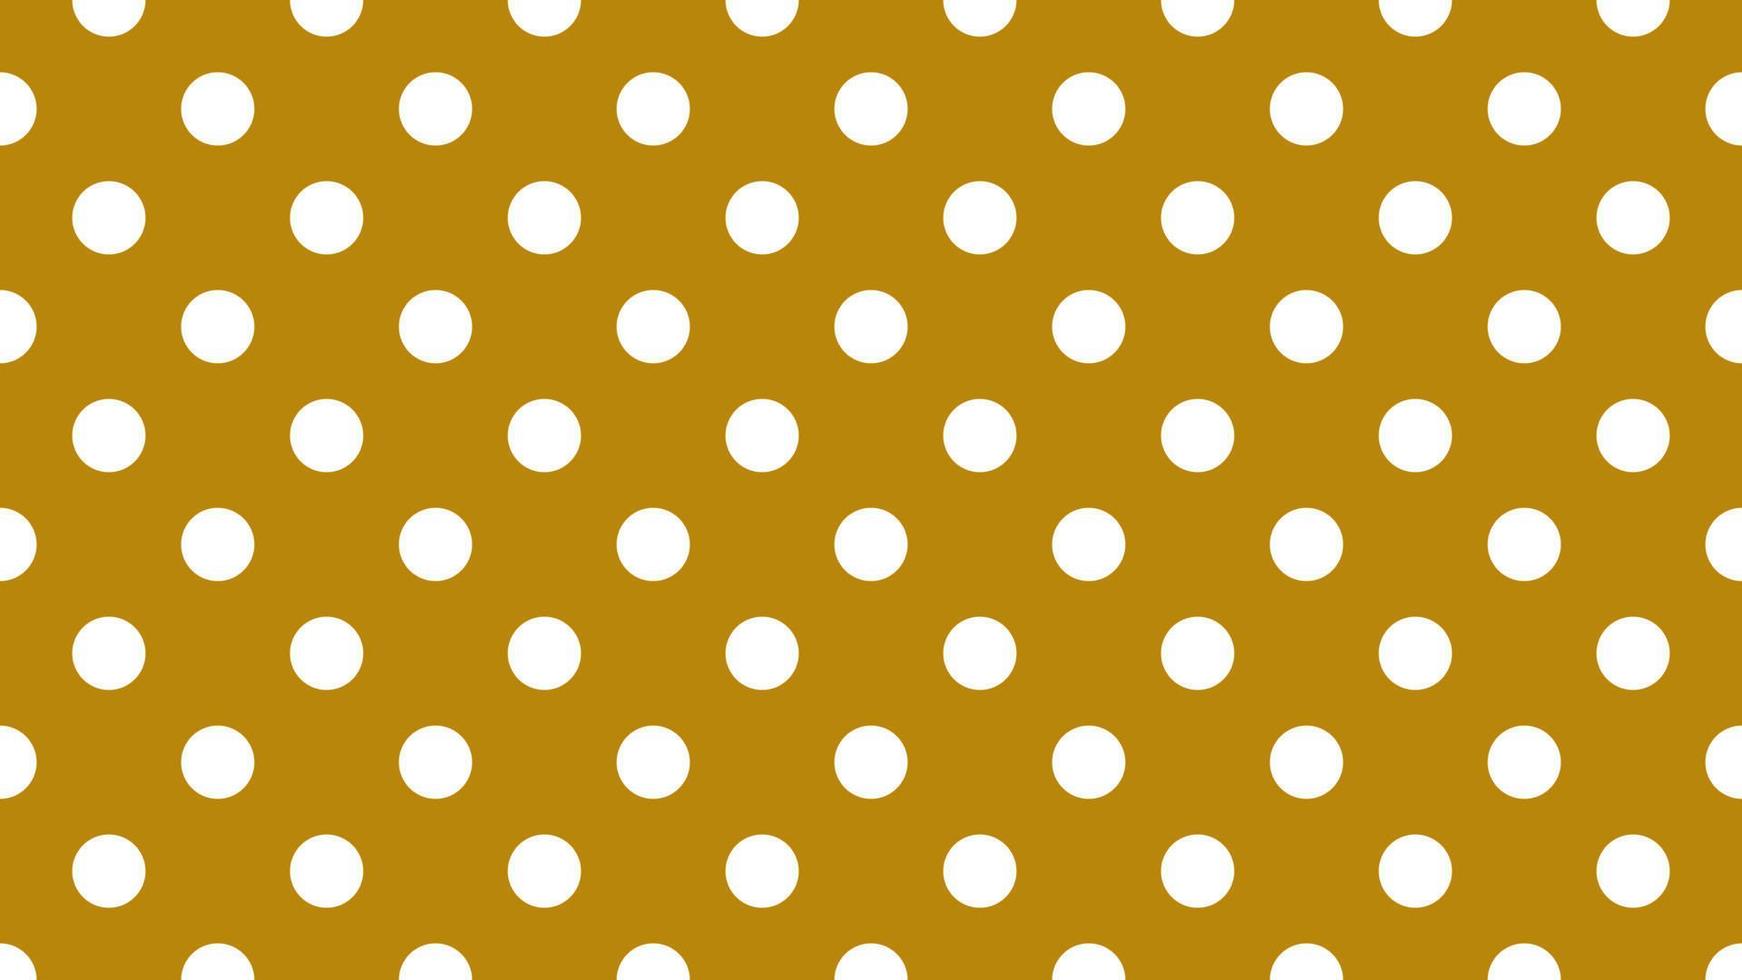 blanco color polca puntos terminado oscuro vara de oro marrón antecedentes vector